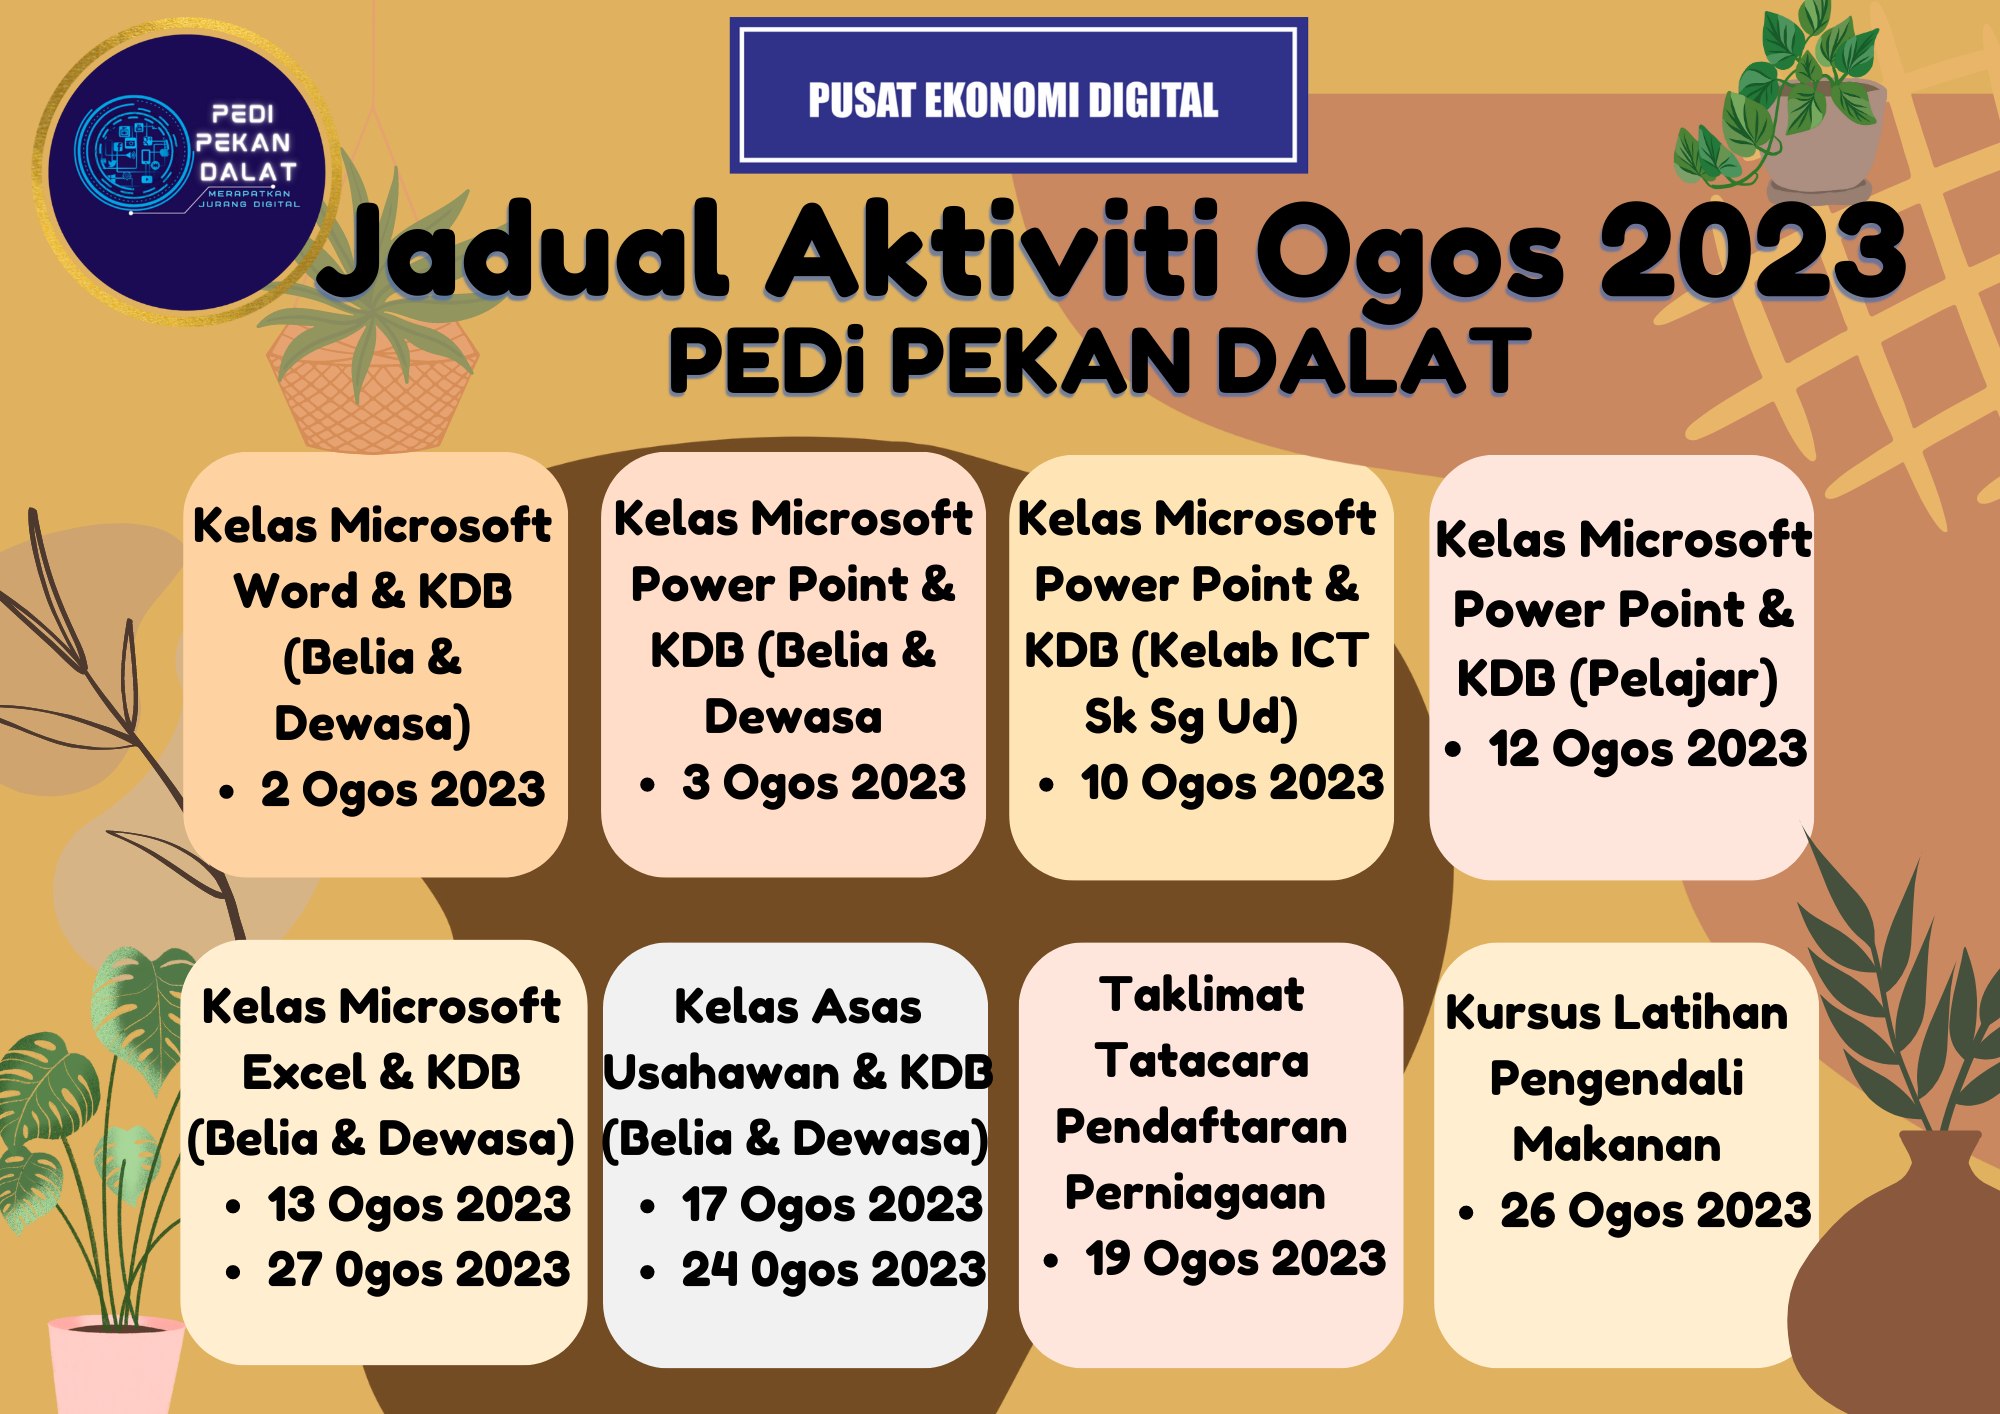 JADUAL-AKTIVITI-OGOS-2023-UPLOAD-PORTAL